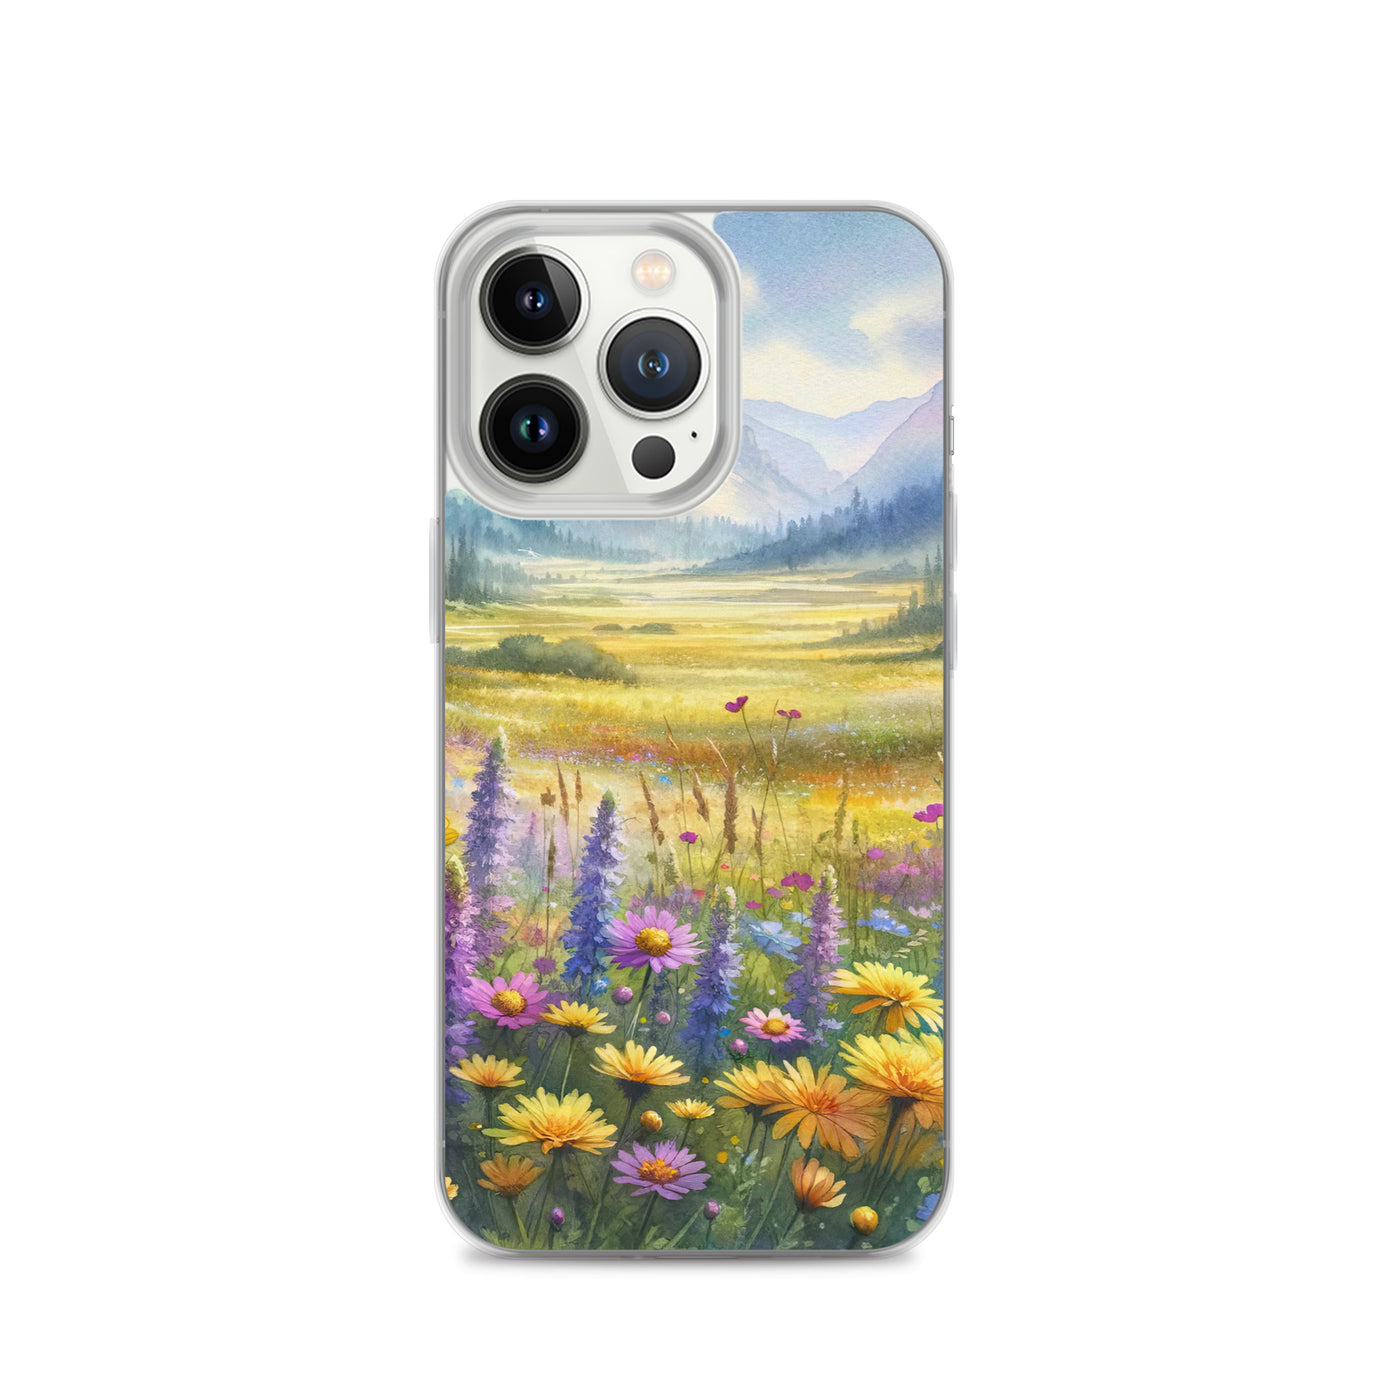 Aquarell einer Almwiese in Ruhe, Wildblumenteppich in Gelb, Lila, Rosa - iPhone Schutzhülle (durchsichtig) berge xxx yyy zzz iPhone 13 Pro